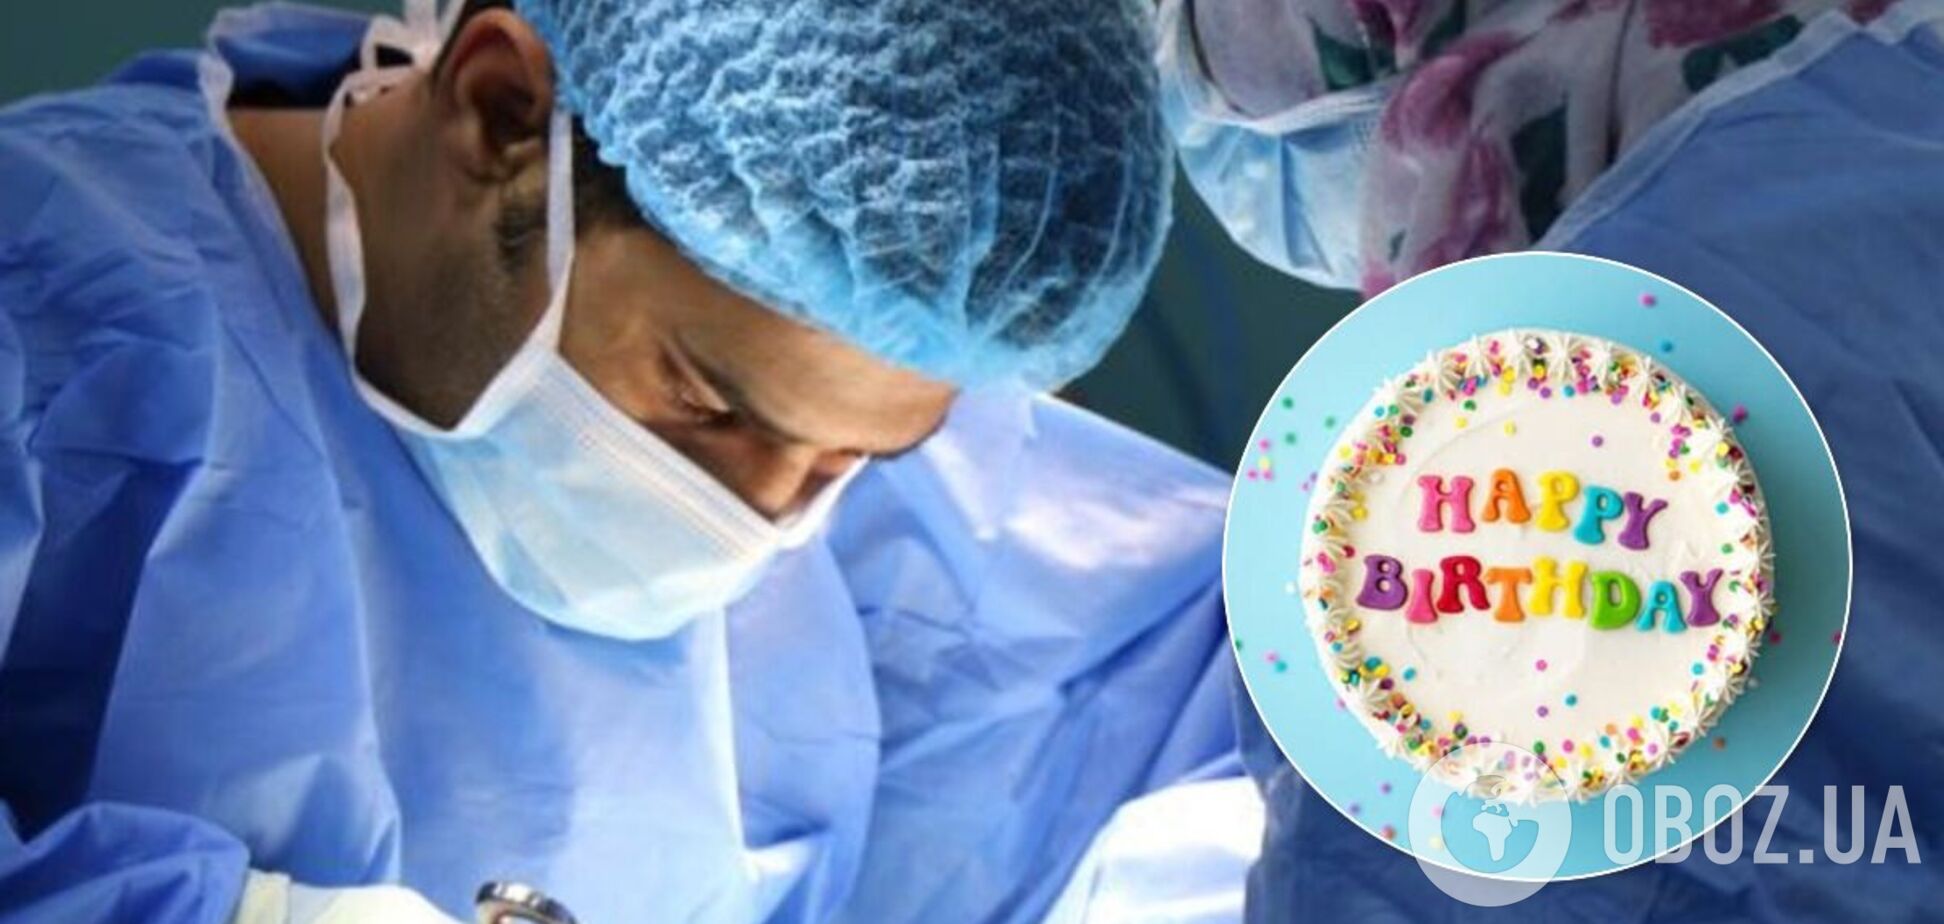 В день народження хірурга краще не оперуватися